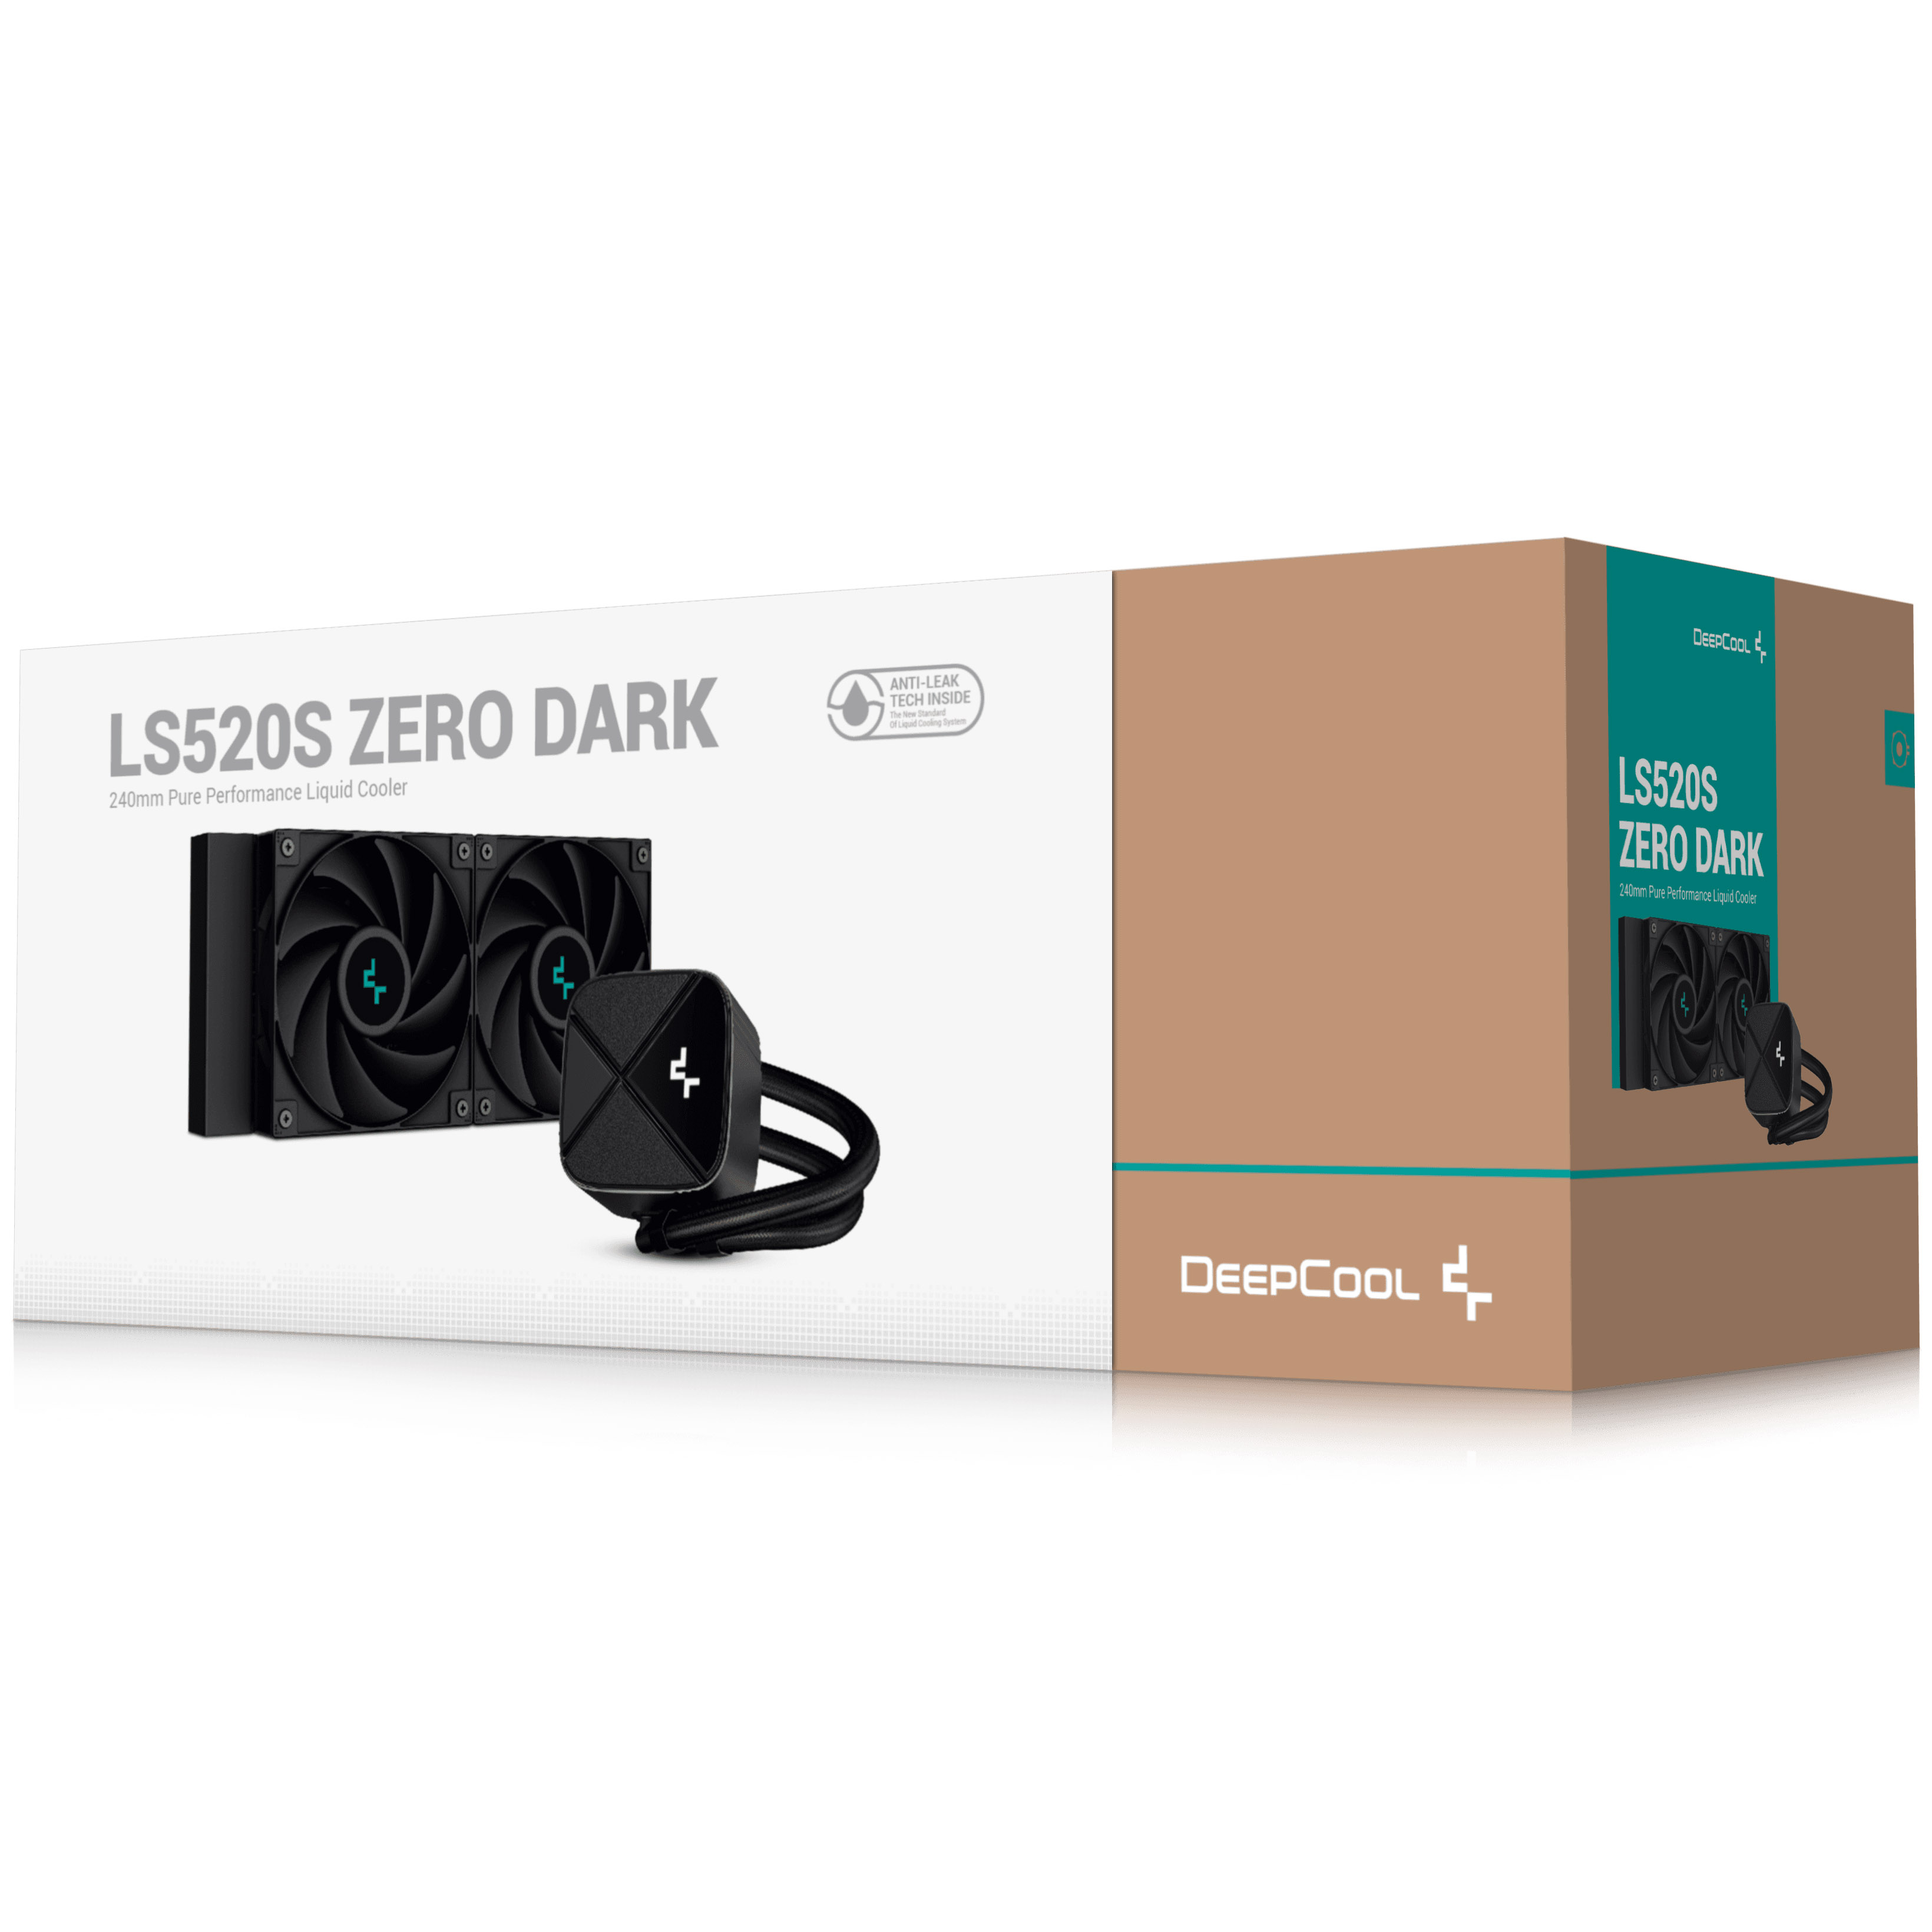 DeepCool - DeepCool LS520S Zero Dark All In One CPU Water Cooler - 240mm